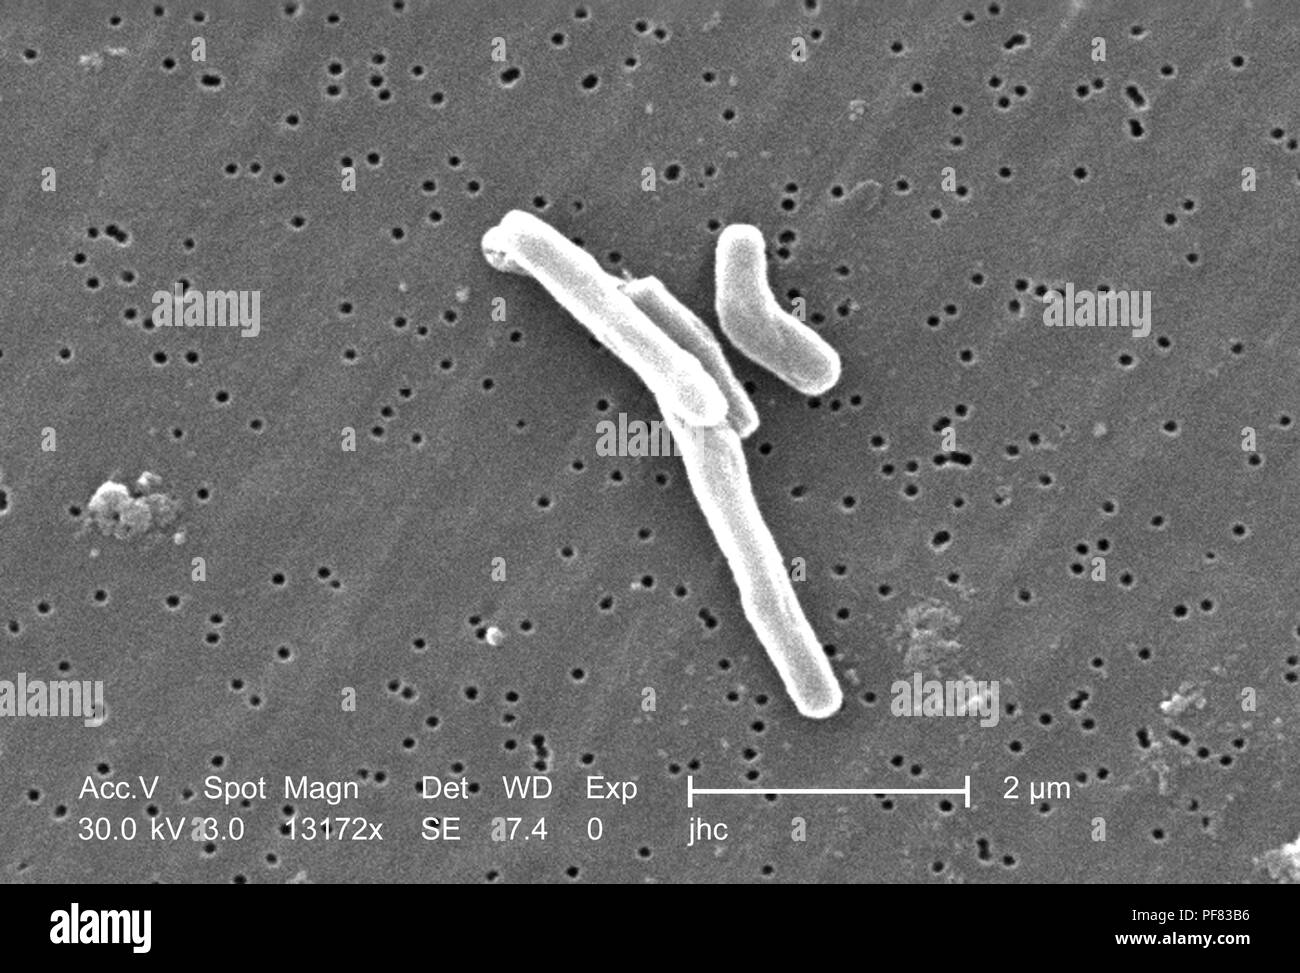 Gram-positivi di Mycobacterium tuberculosis batteri hanno rivelato nel 13172x scansione ingrandita al microscopio elettronico (SEM) immagine, 2006. Immagine cortesia di centri per il controllo delle malattie (CDC) / Ray Butler, MS, Janice Haney Carr. () Foto Stock